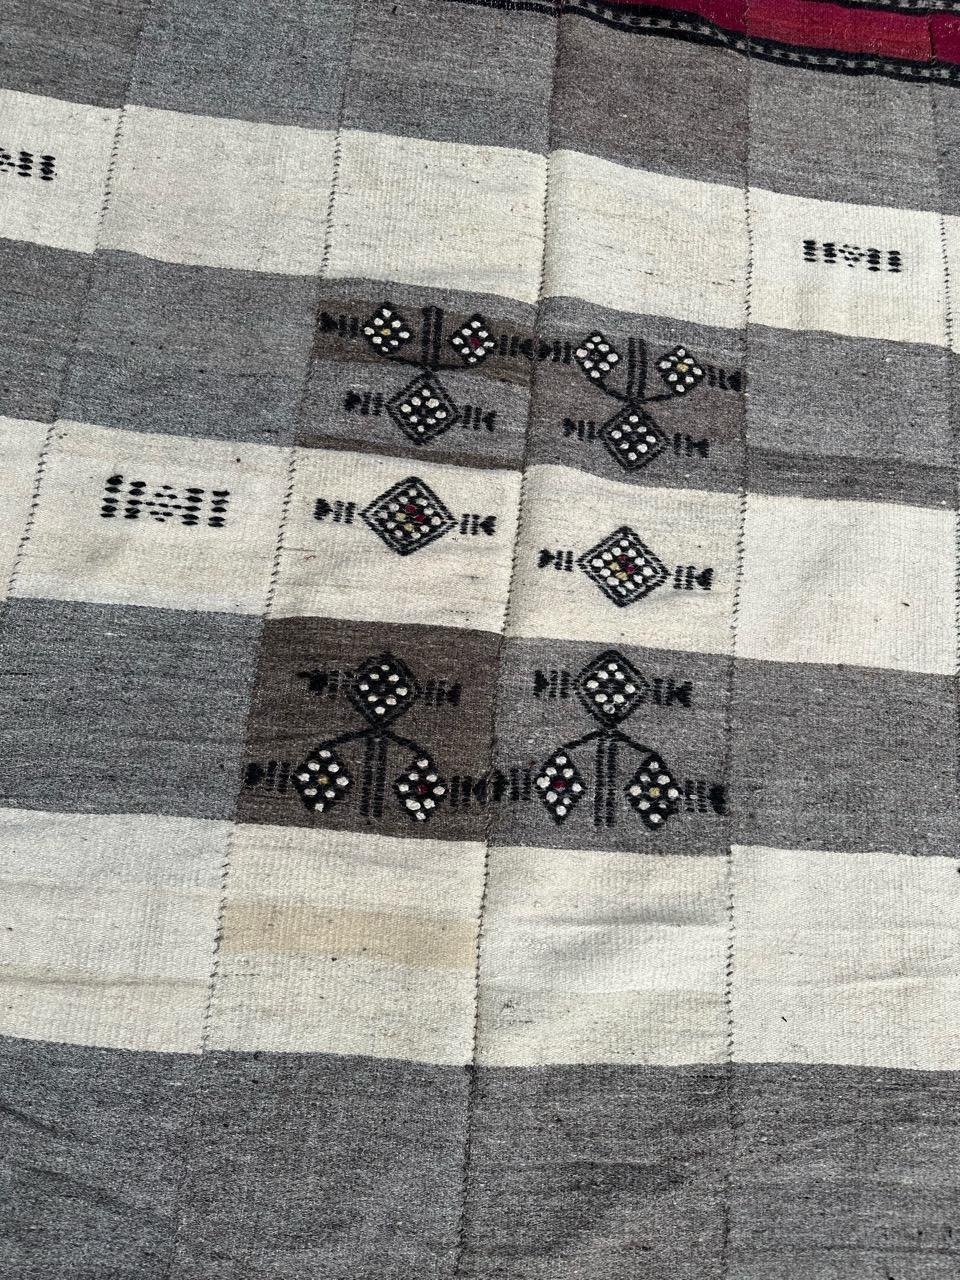 Schöner antiker Webteppich mit schönem einfachem geometrischem Muster und hellen Farben, komplett handgewebt mit Wolle auf Wollbasis.

✨✨✨
